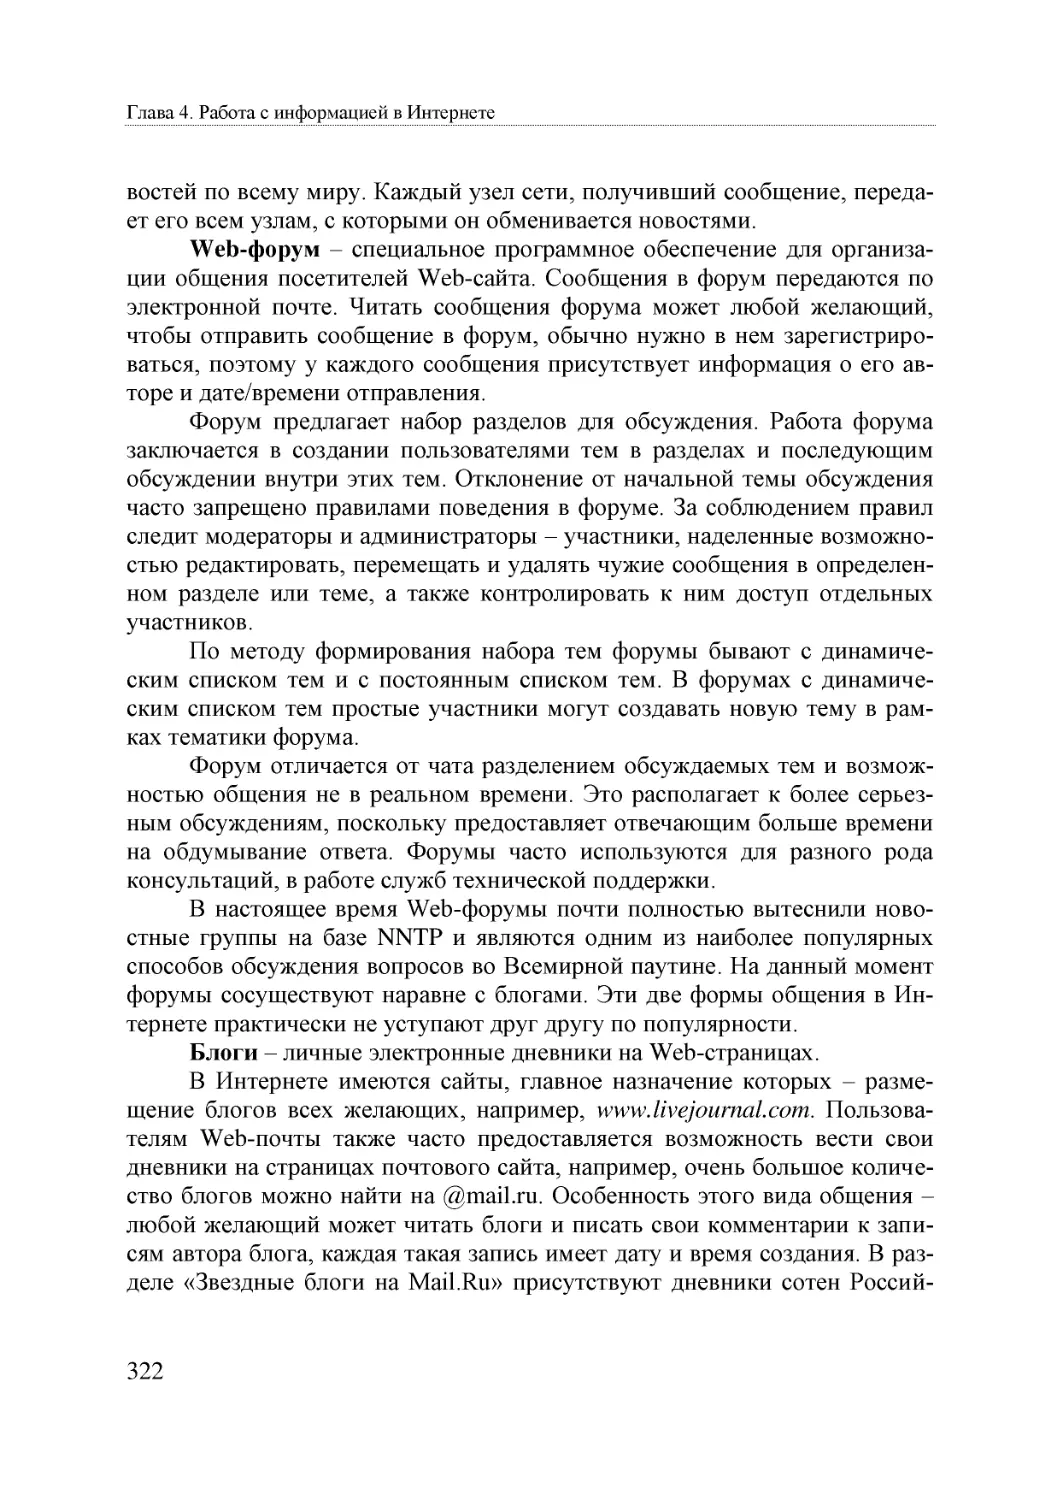 Informatika_Uchebnik_dlya_vuzov_2010 322